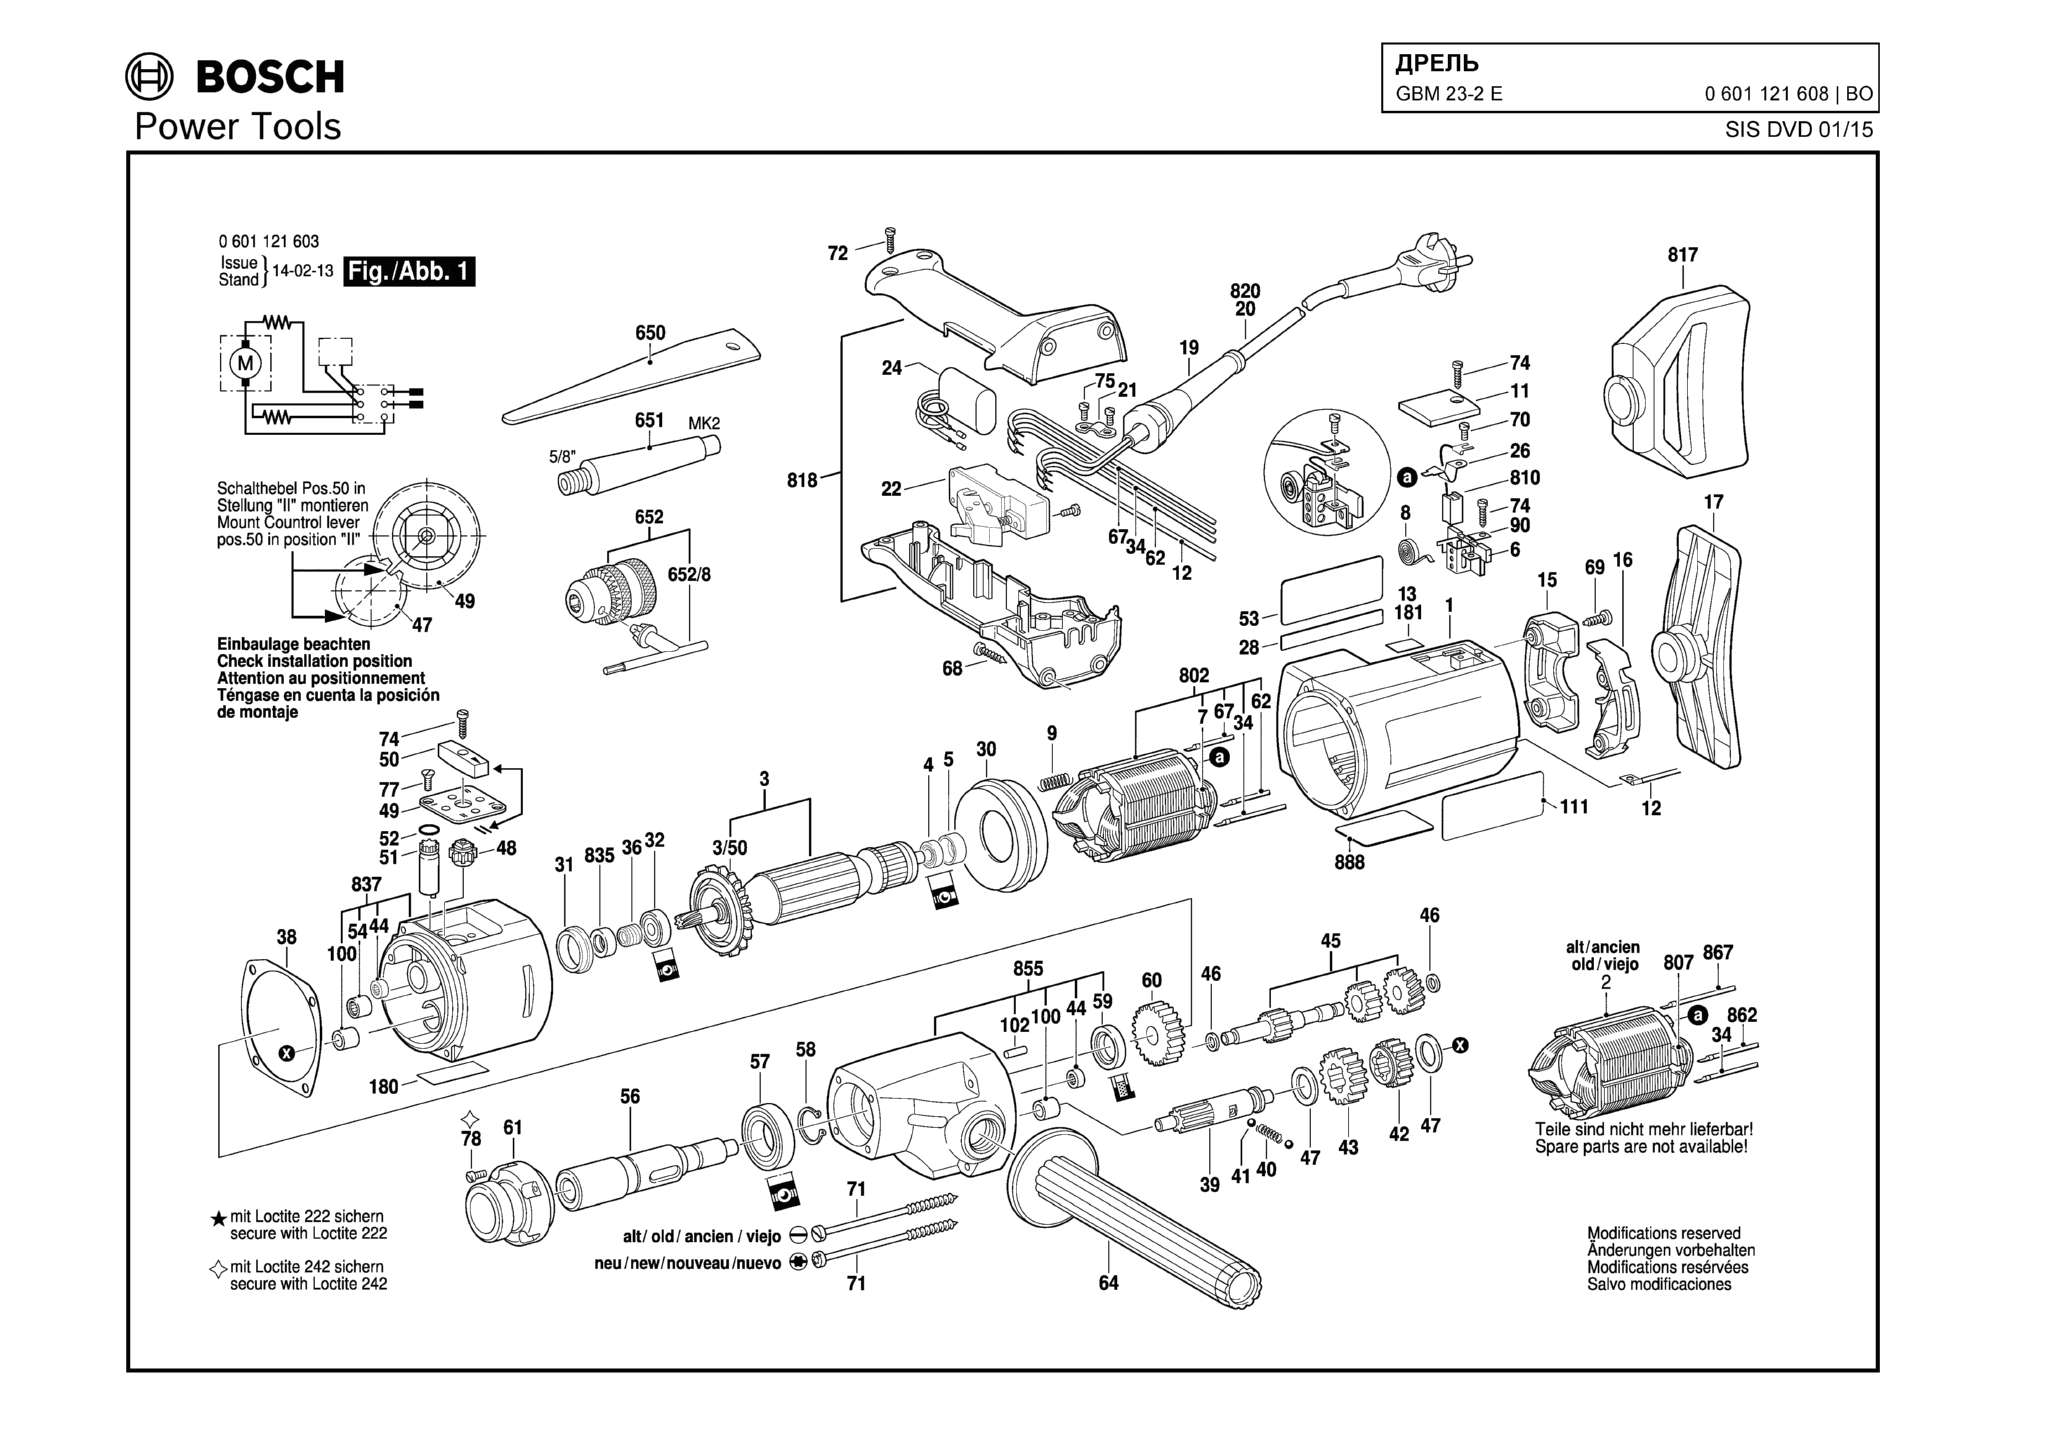 Запчасти, схема и деталировка Bosch GBM 23-2 (ТИП 0601121608)